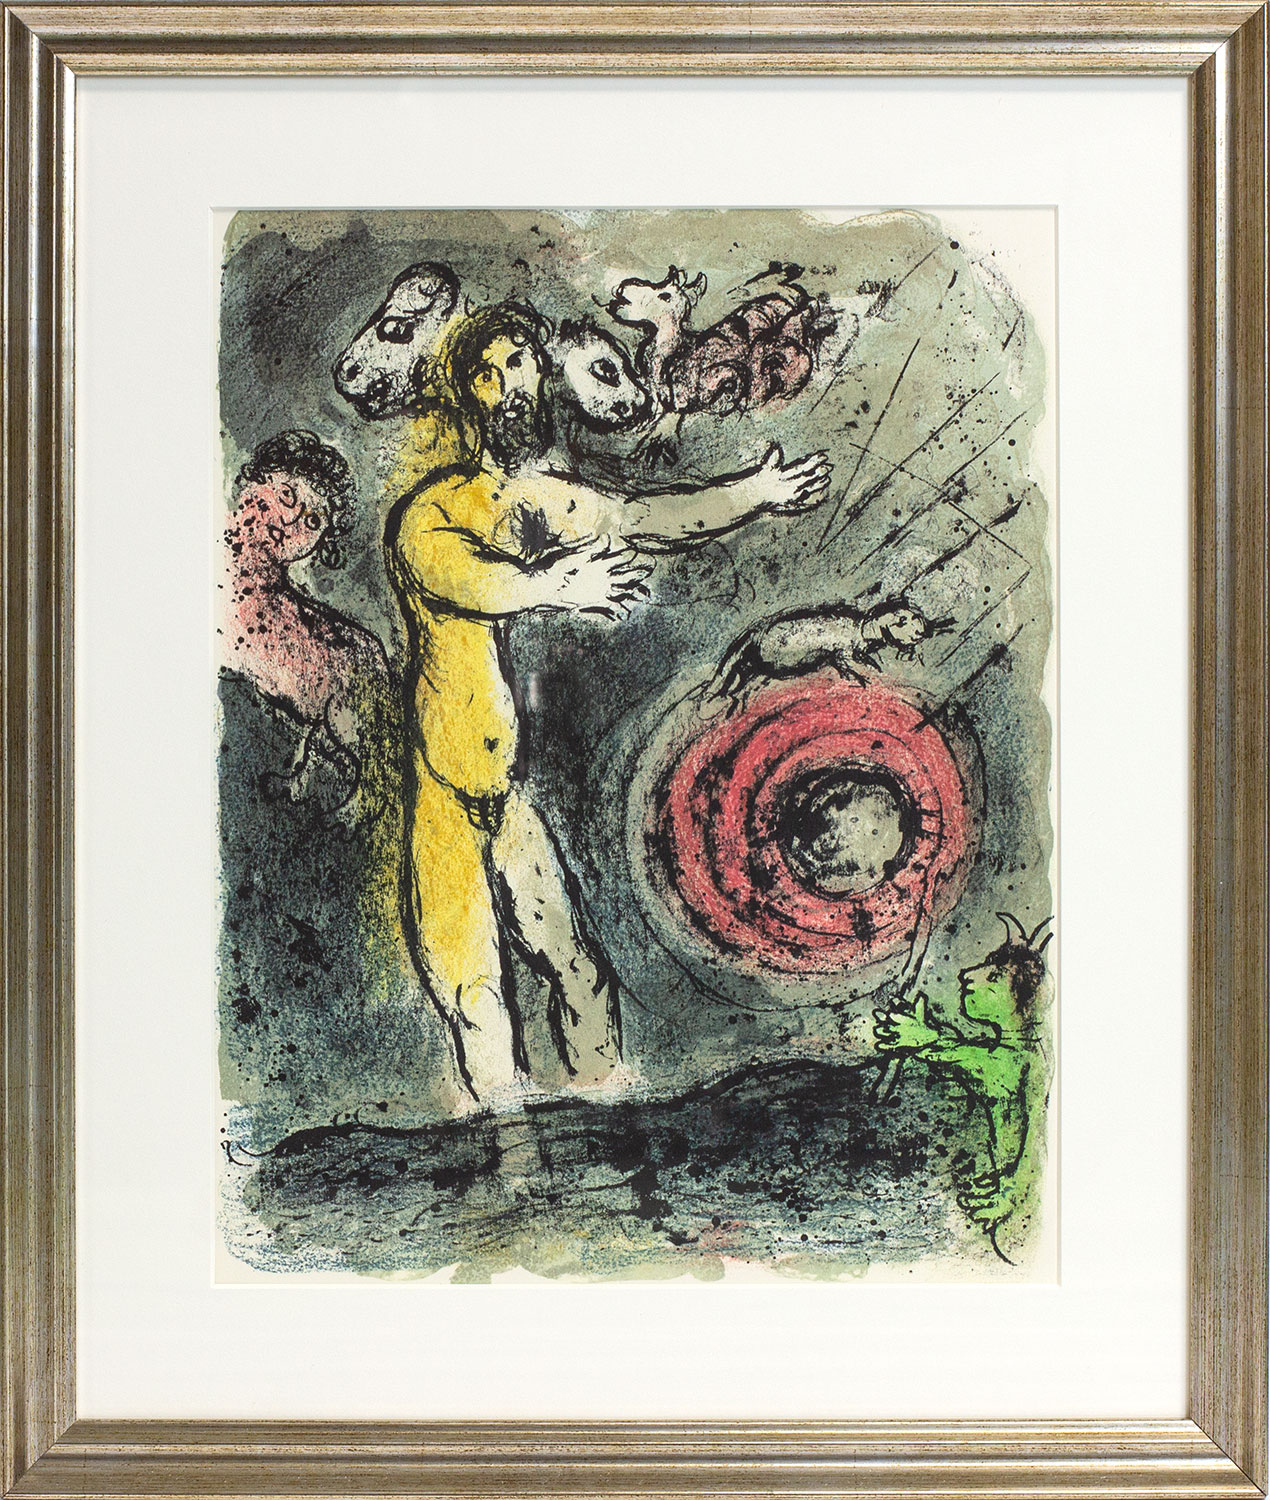 Bild "Die Odyssee - Proteus" (1989), gerahmt by Marc Chagall